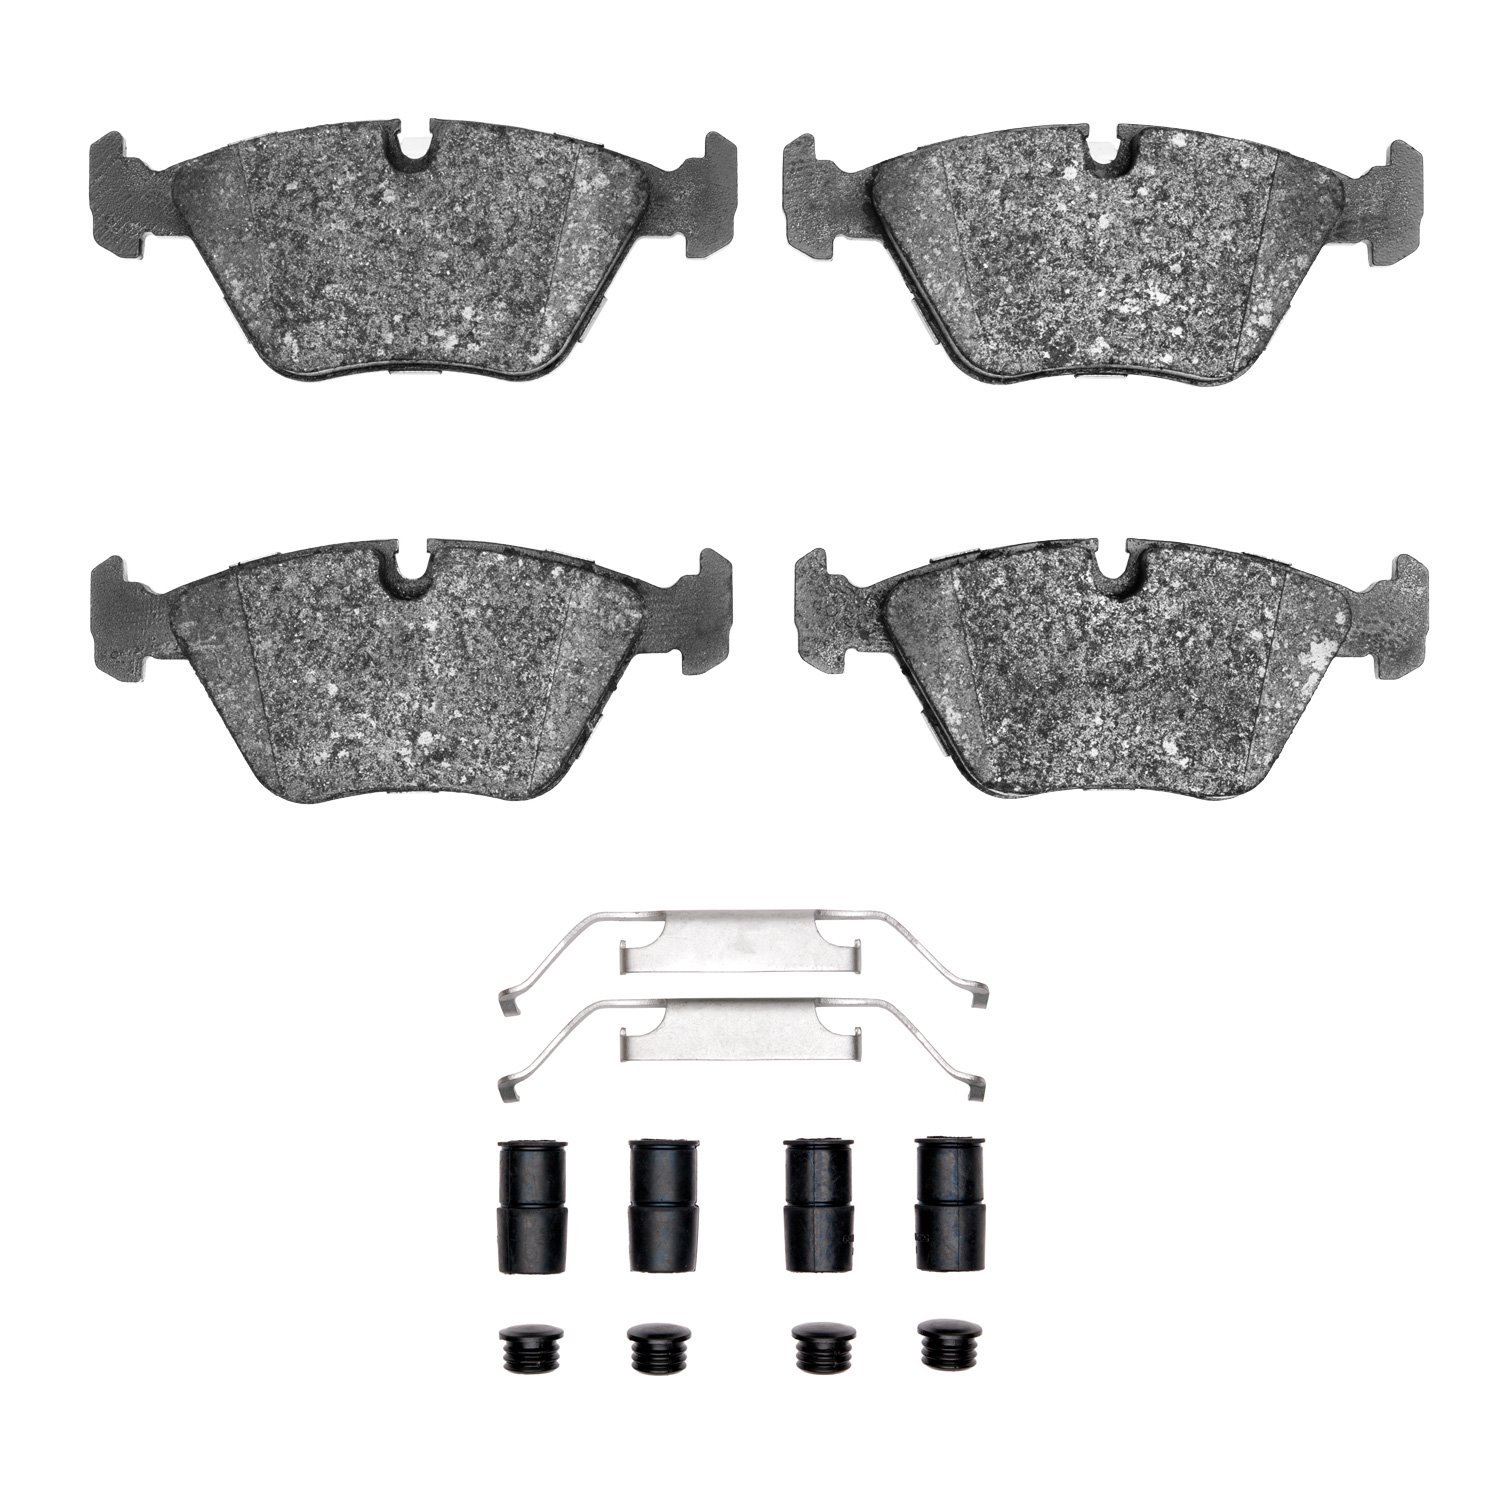 Semi-Metallic Brake Pads & Hardware Kit, 1987-2005 BMW, Position: Front